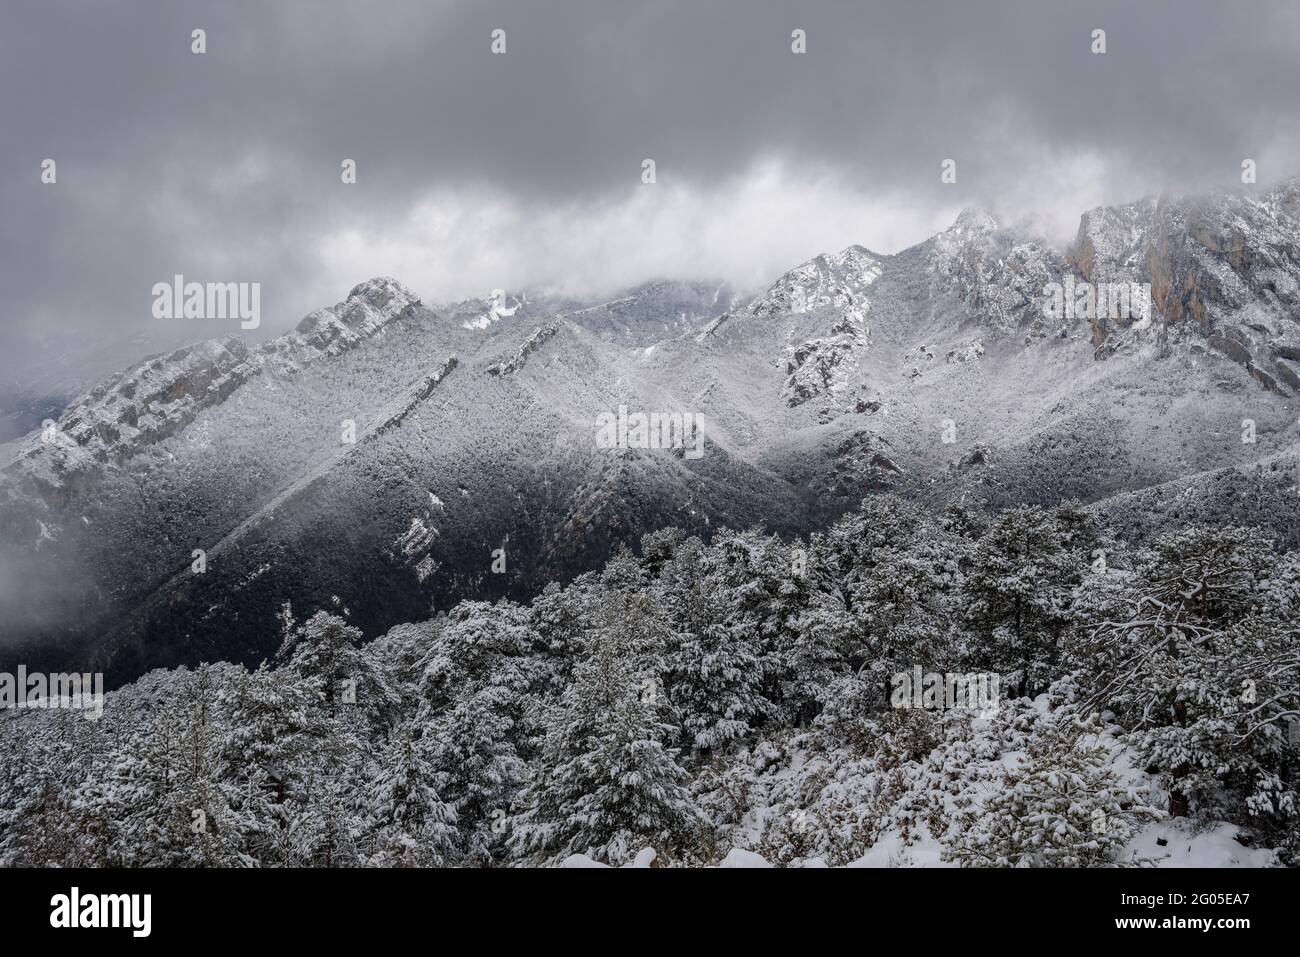 Alt Berguedà montagne viste dal Colle de Pal durante una nevicata invernale (Parco Naturale Cadí-Moixeró, Catalogna, Spagna, Pirenei) Foto Stock